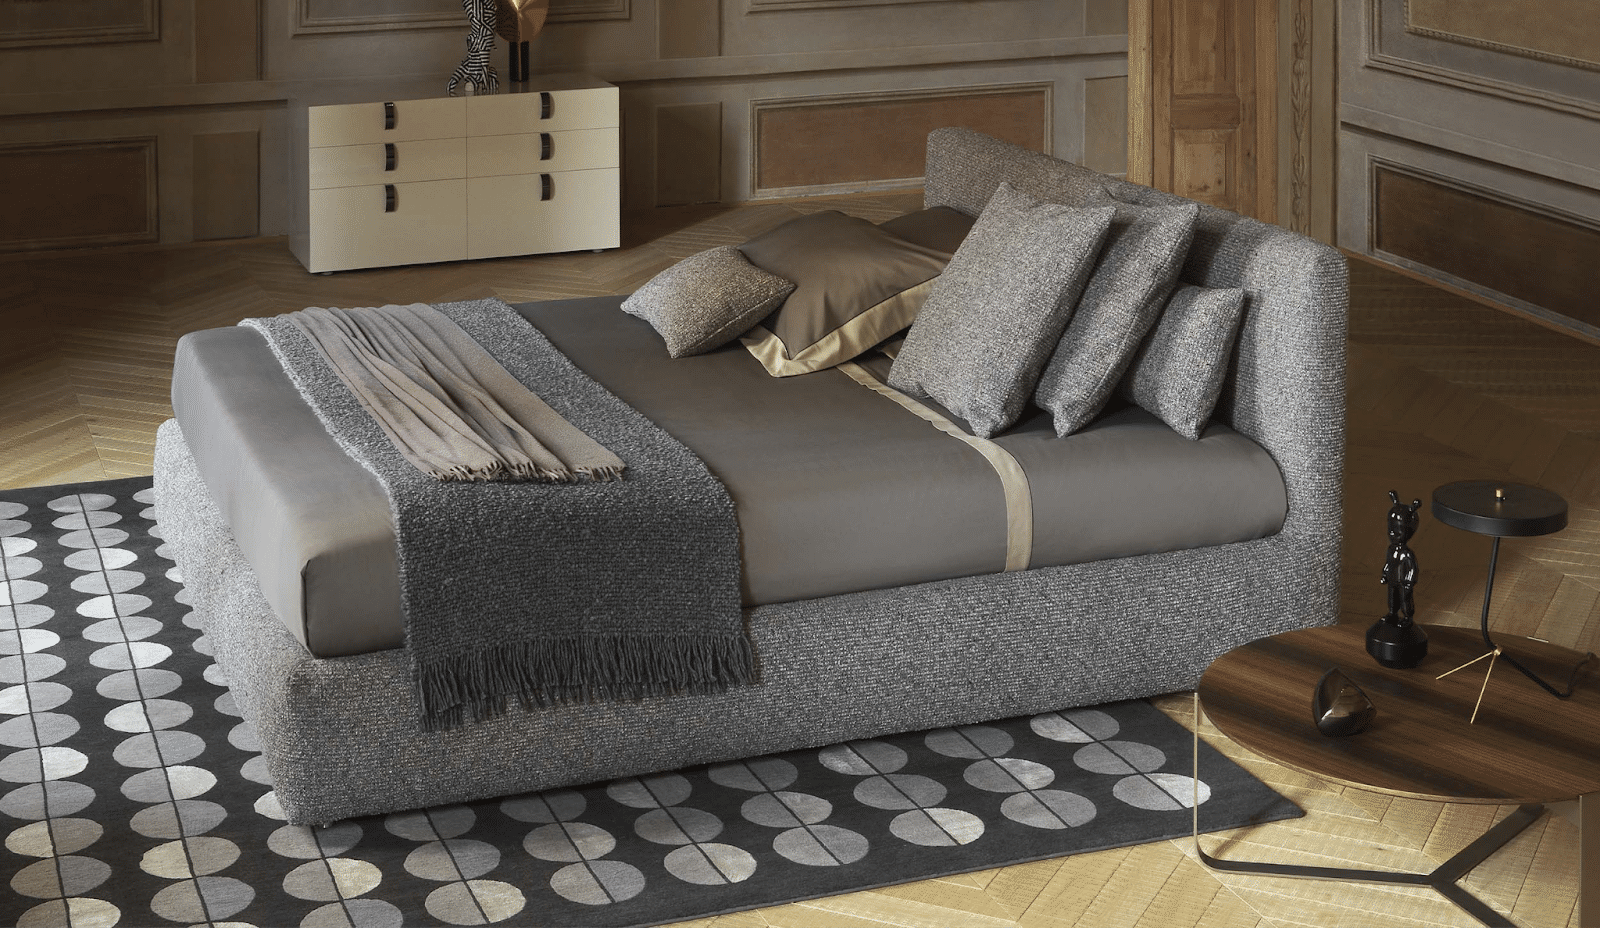 Merkurio è un letto di design progettato da Flou proposta da Peverelli